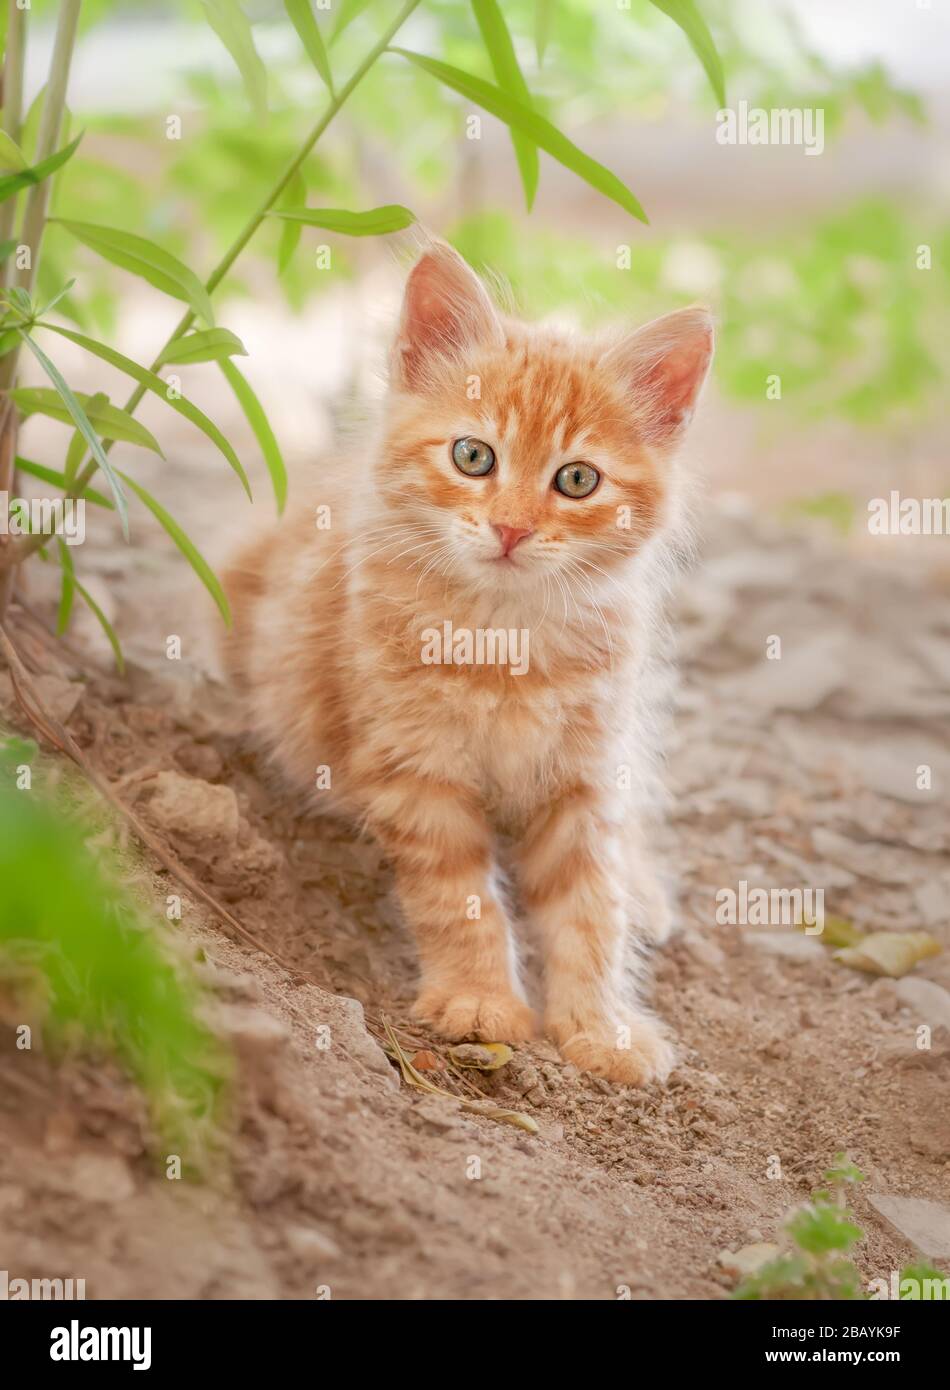 Carino longhaired rosso tabby kitten che posano in un giardino, il giovane gatto lanuginoso che guarda curiosamente con occhi meravigliosi colorati, Cipro Foto Stock